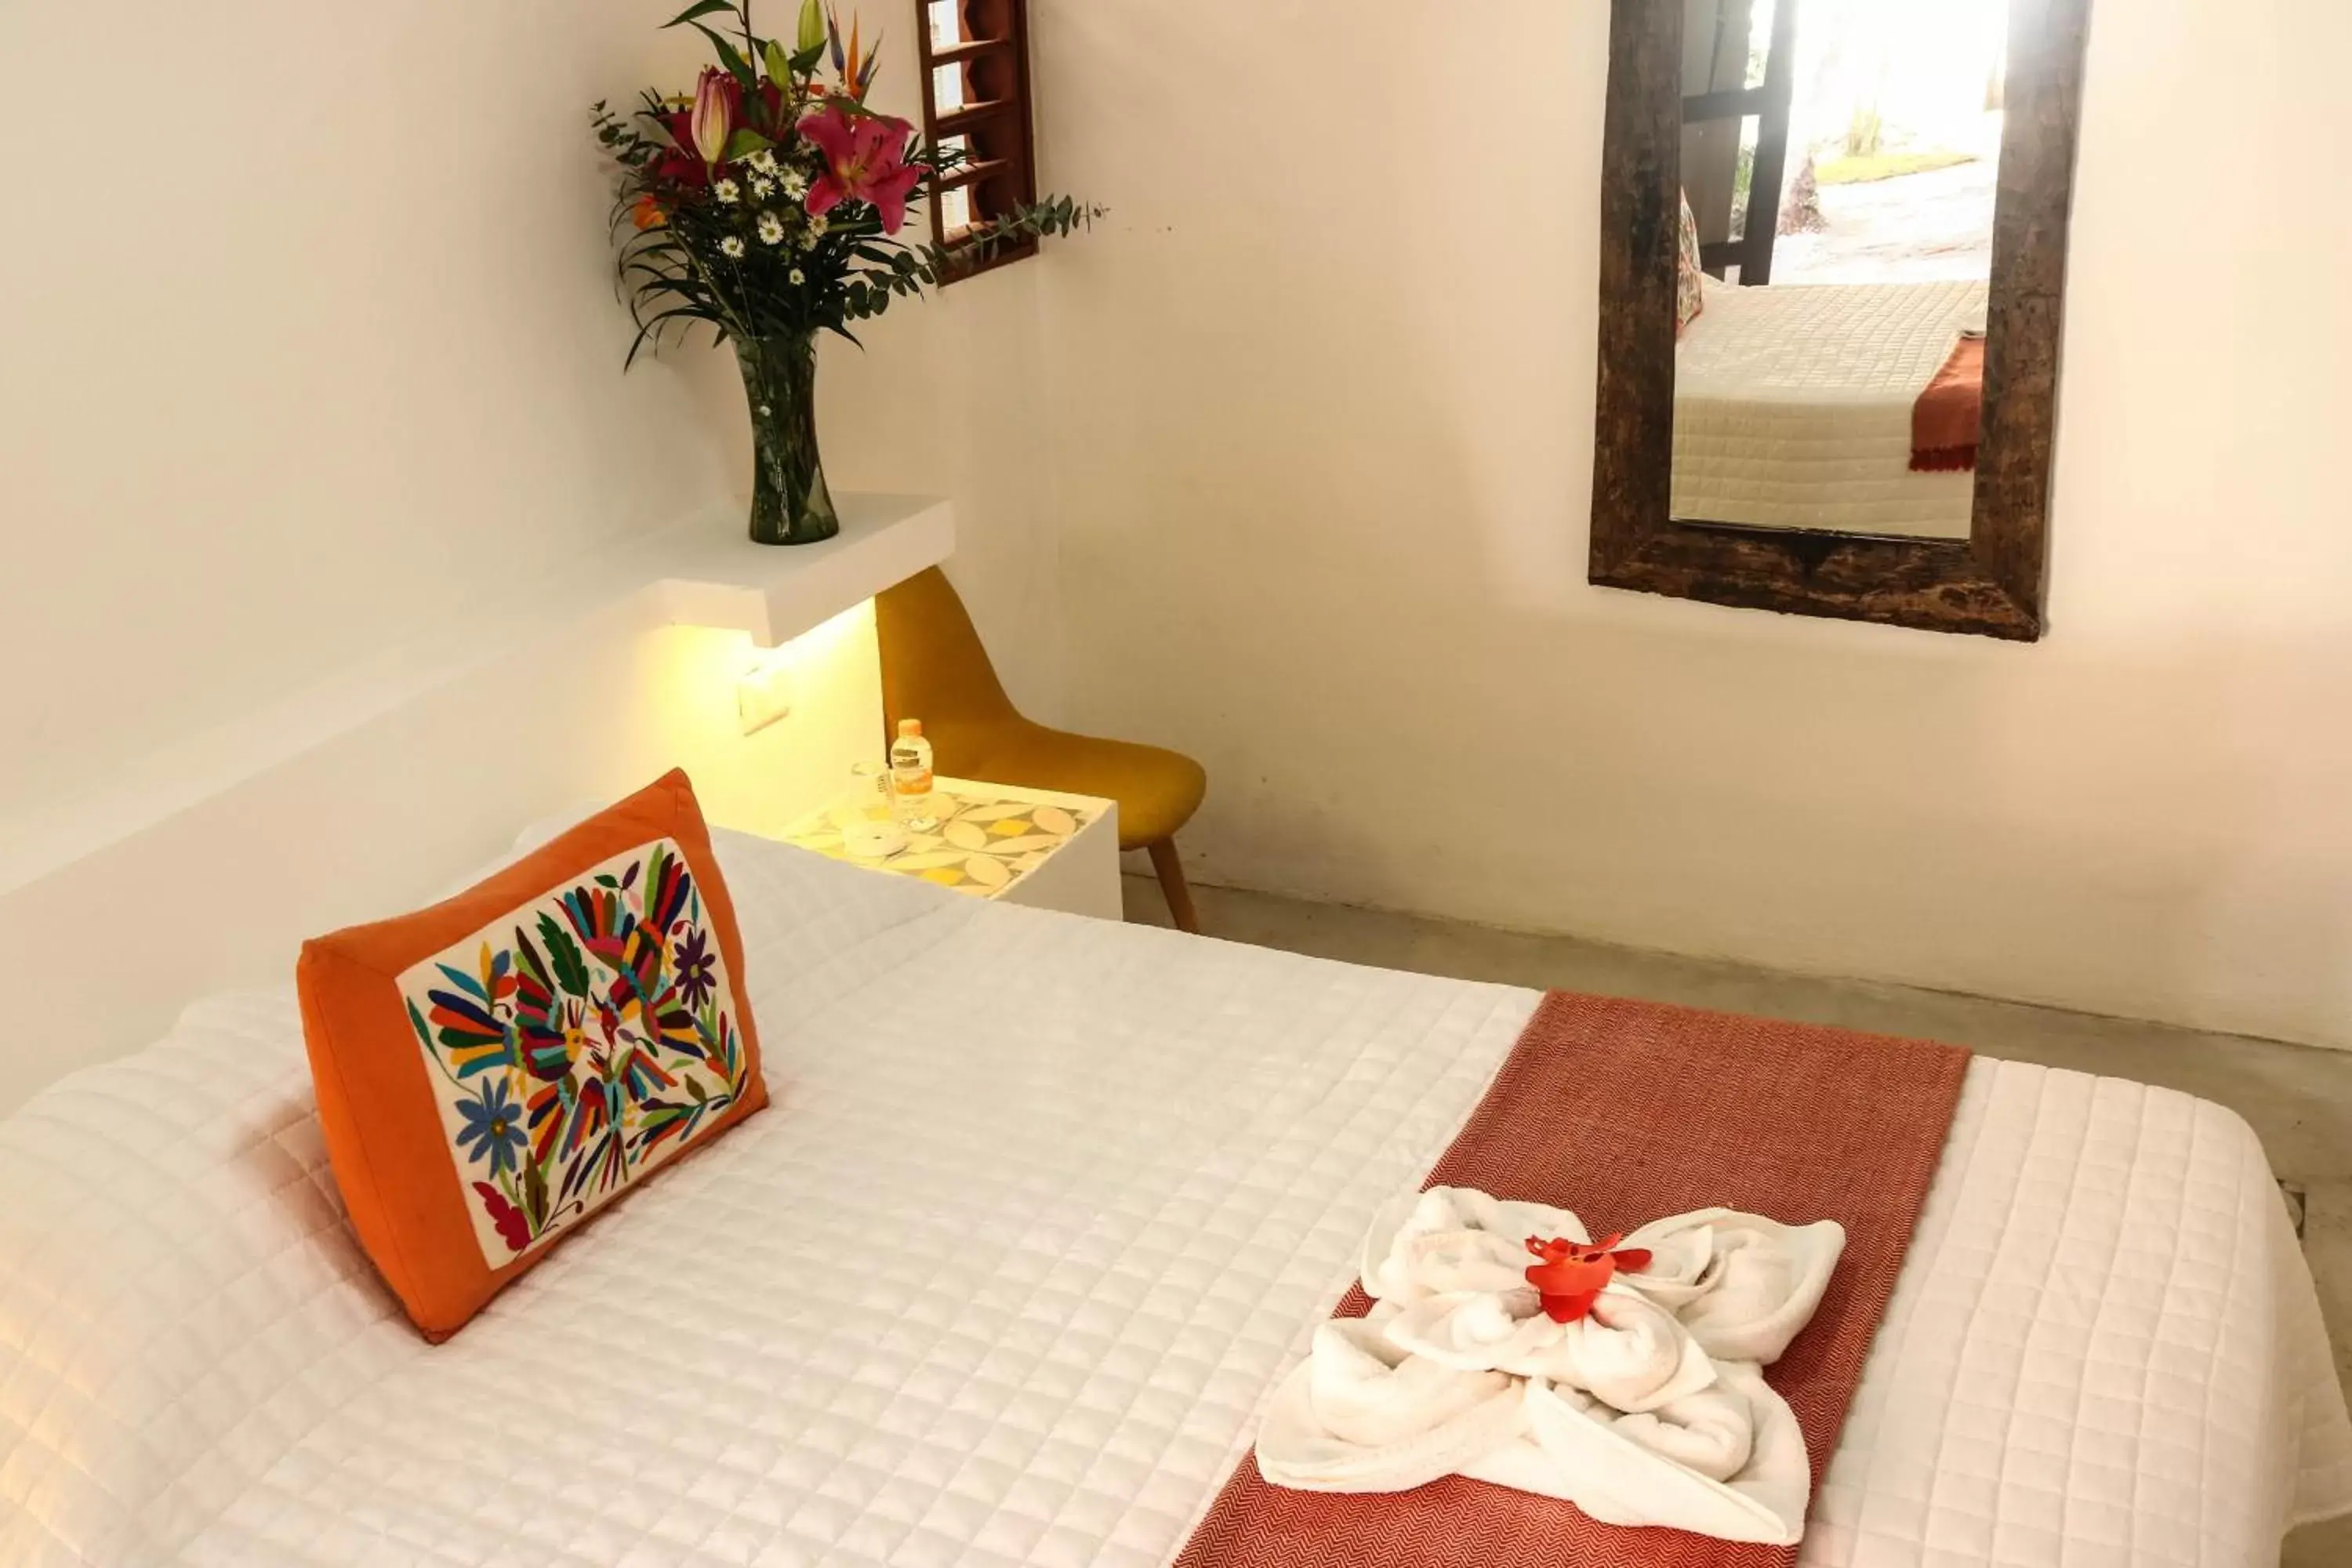 Bedroom, Bed in Kin Ha Tulum Hotel